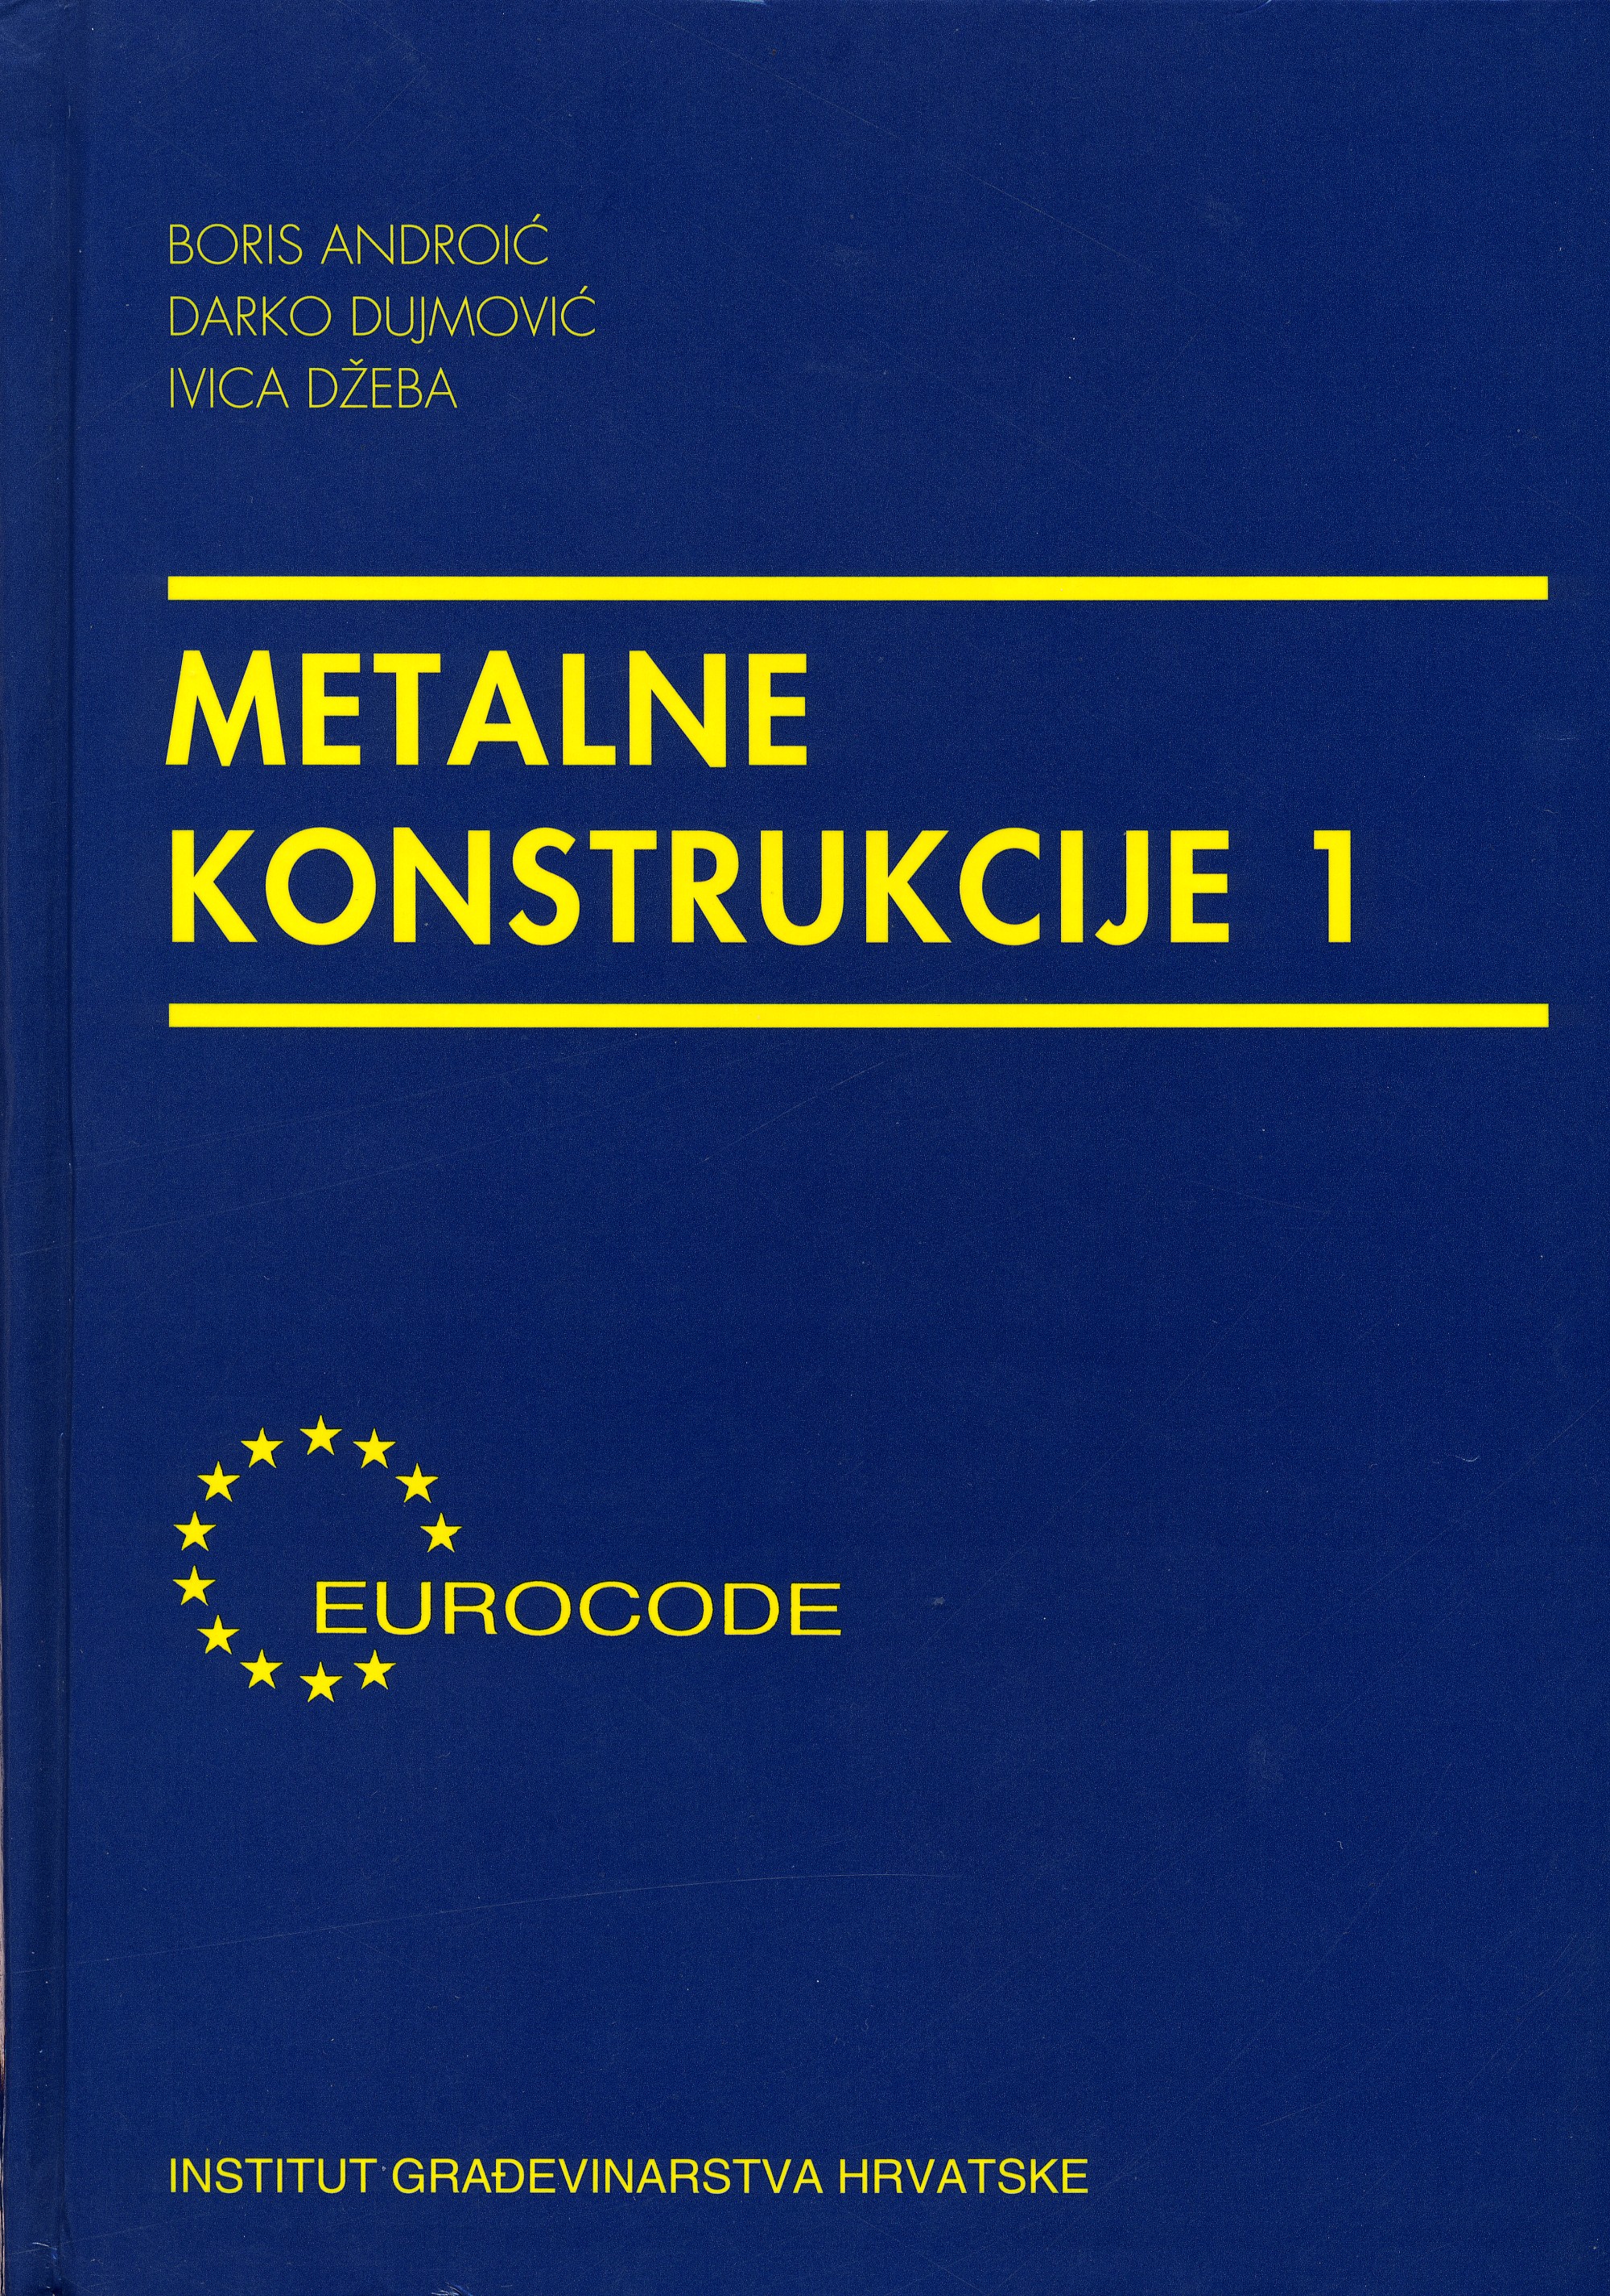 metalne kostrukcije 1 -knjiga